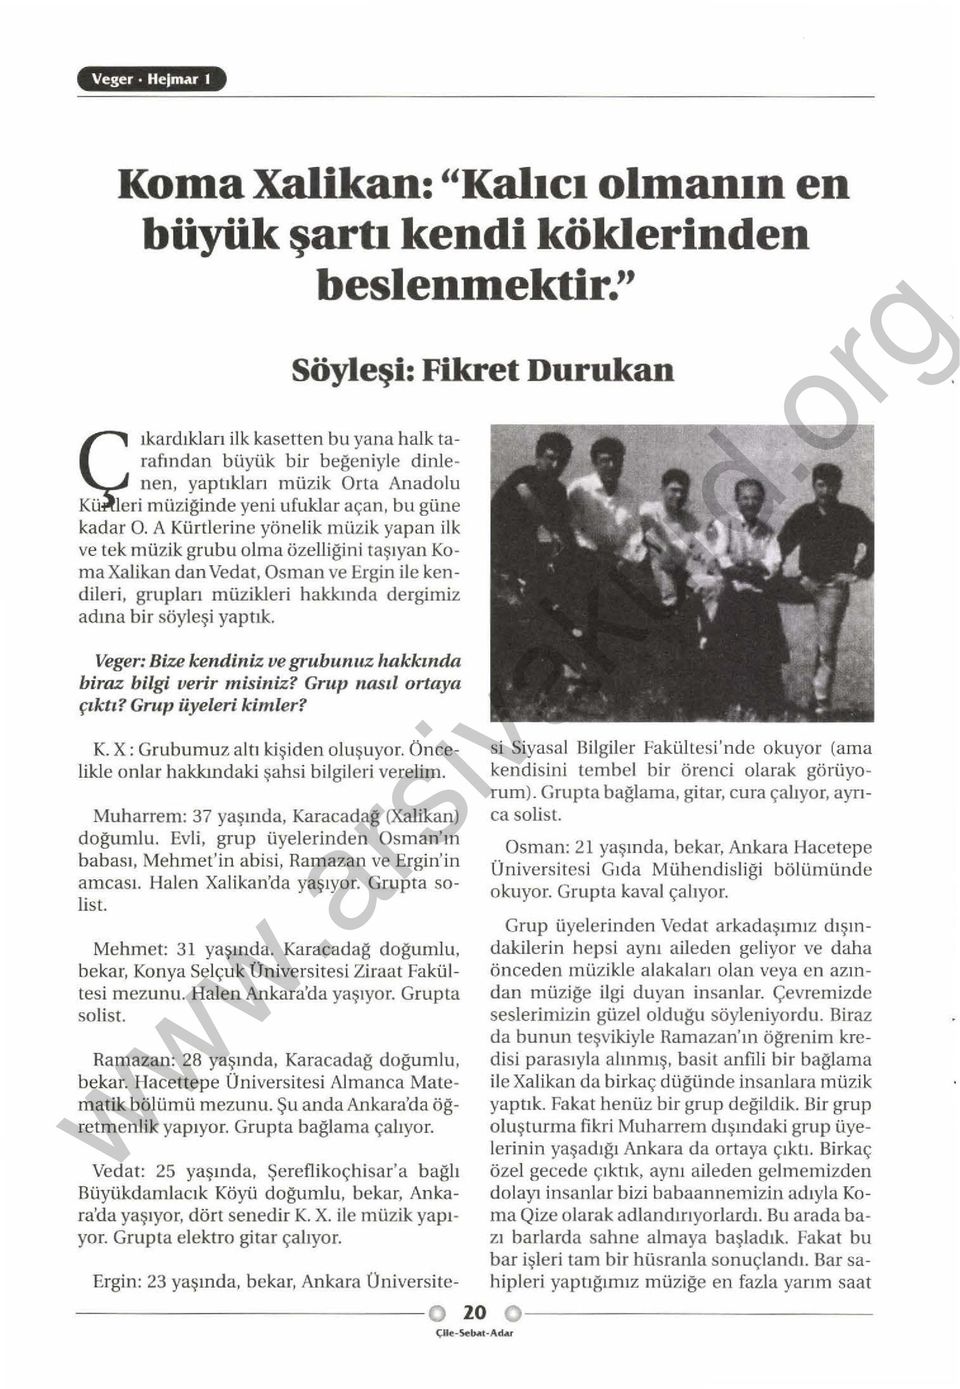 A Kürtlerine yönelik müzik yapan ilk ve tek müzik grubu olma özelliğini taşıyan Koma Xalikan dan Vedat, Osman ve Ergin ile kendileri, grupları müzikleri hakkında dergimiz adına bir söyl eşi yaptık.